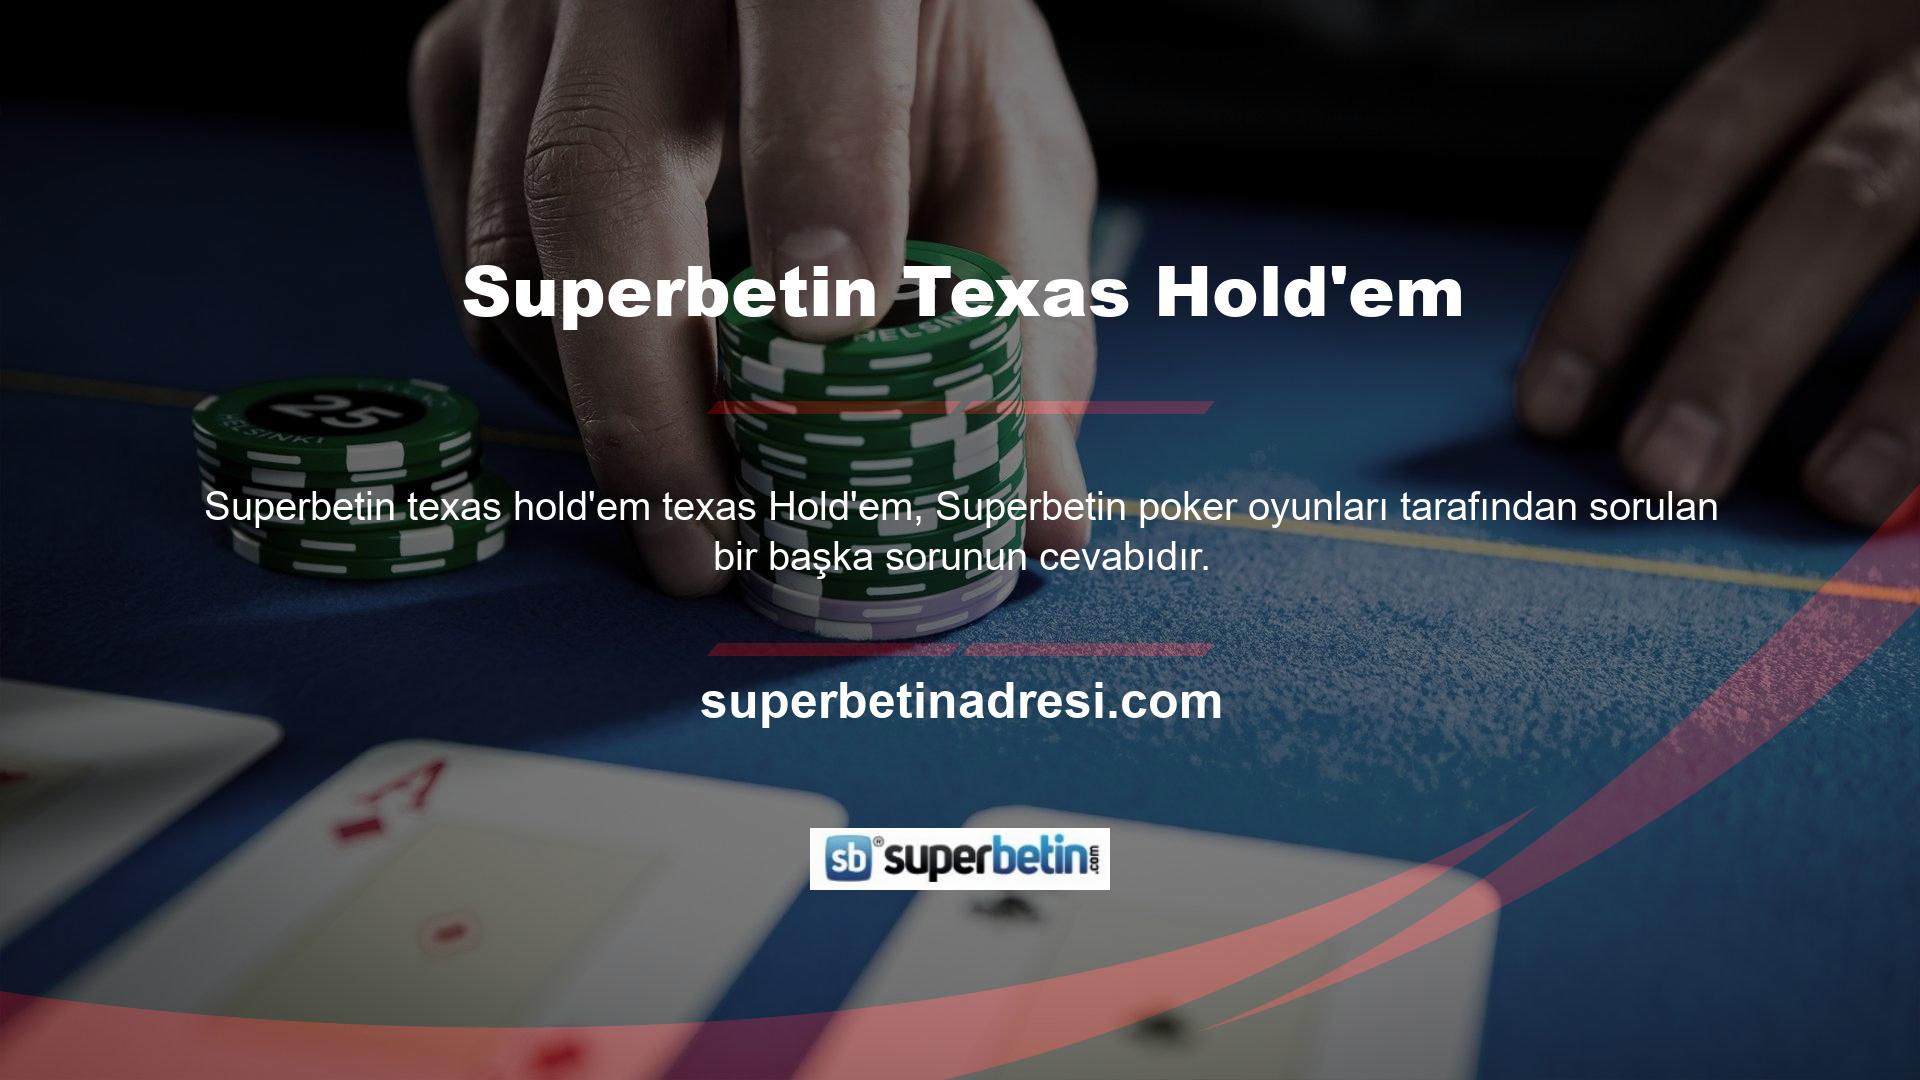 Superbetin, çok sayıda odası olan ve son derece güvenilir, hile içermeyen tek Texas hold'em oyunudur! Omaha Hold'em, Texas Hold'em'den sonra en popüler ikinci poker çeşididir ve bu oyunu Superbetin birden fazla masa ve canlı krupiye ile oynayabilirsiniz